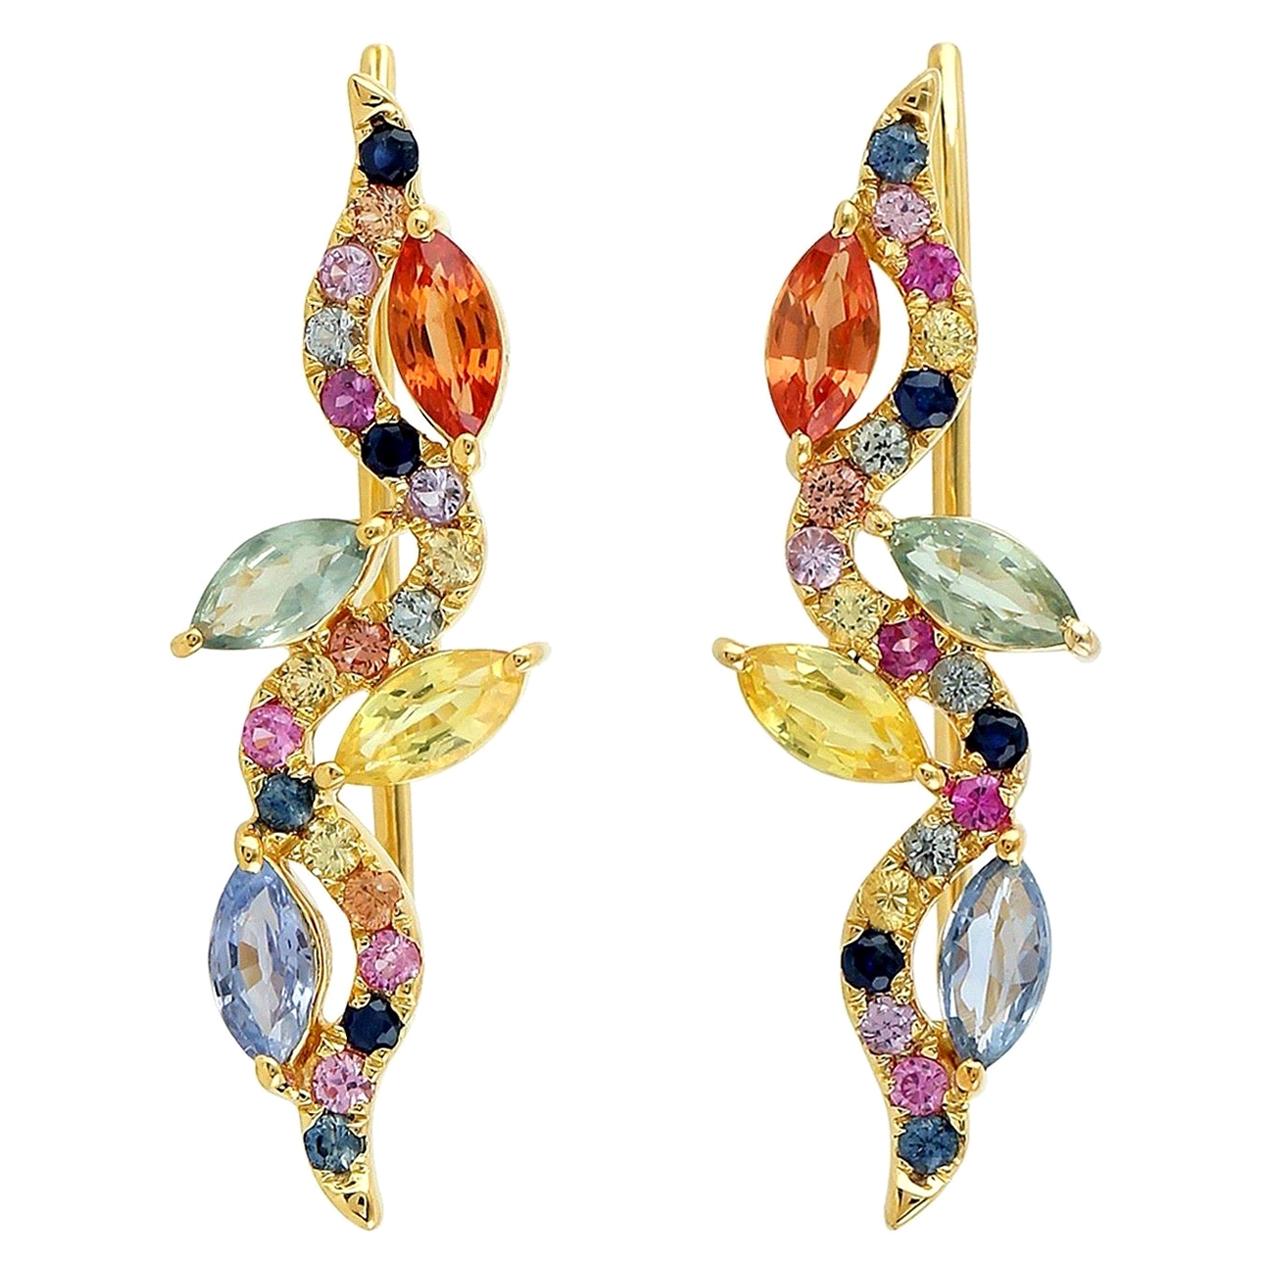 Boucles d'oreilles en or 18 carats et saphirs multicolores